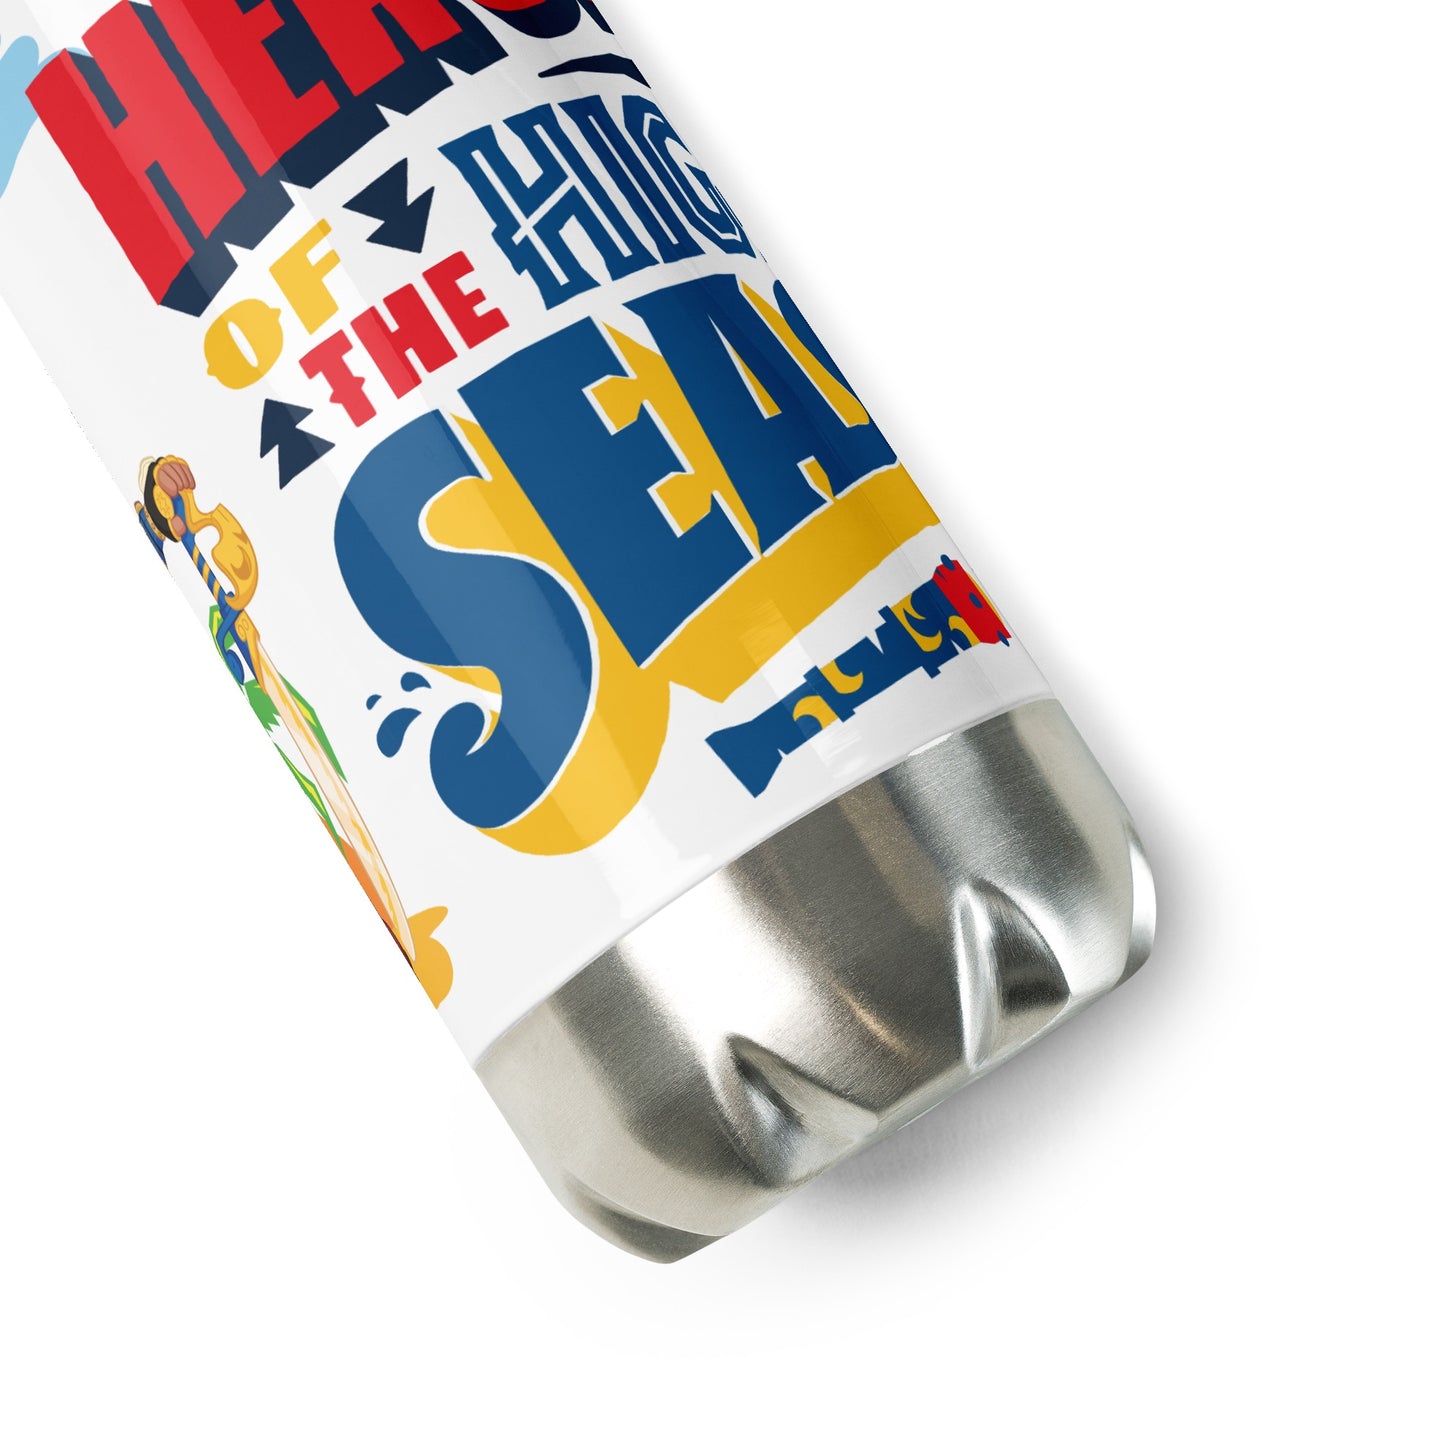 Santiago of the Seas Heroes of the High Seas 17oz Stainless Steel Water Bottler